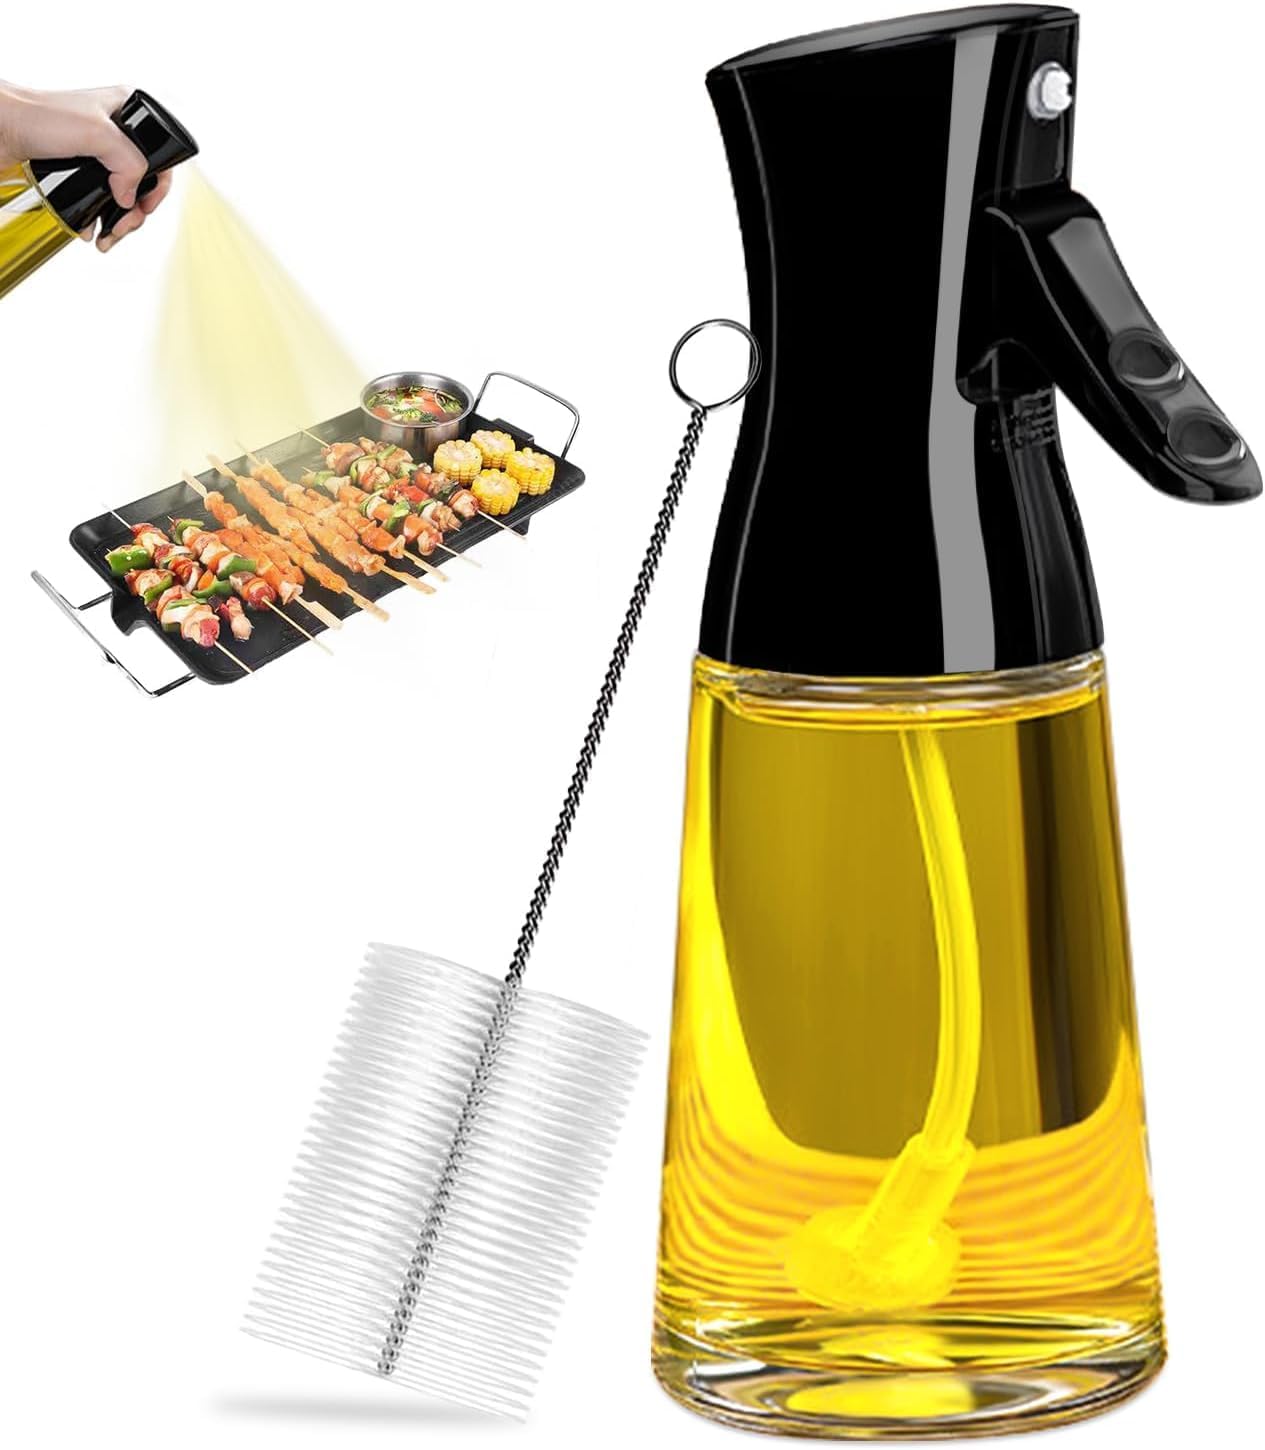 PUZMUG Oil Sprayer for Cooking, Olive Oil Sprayer  